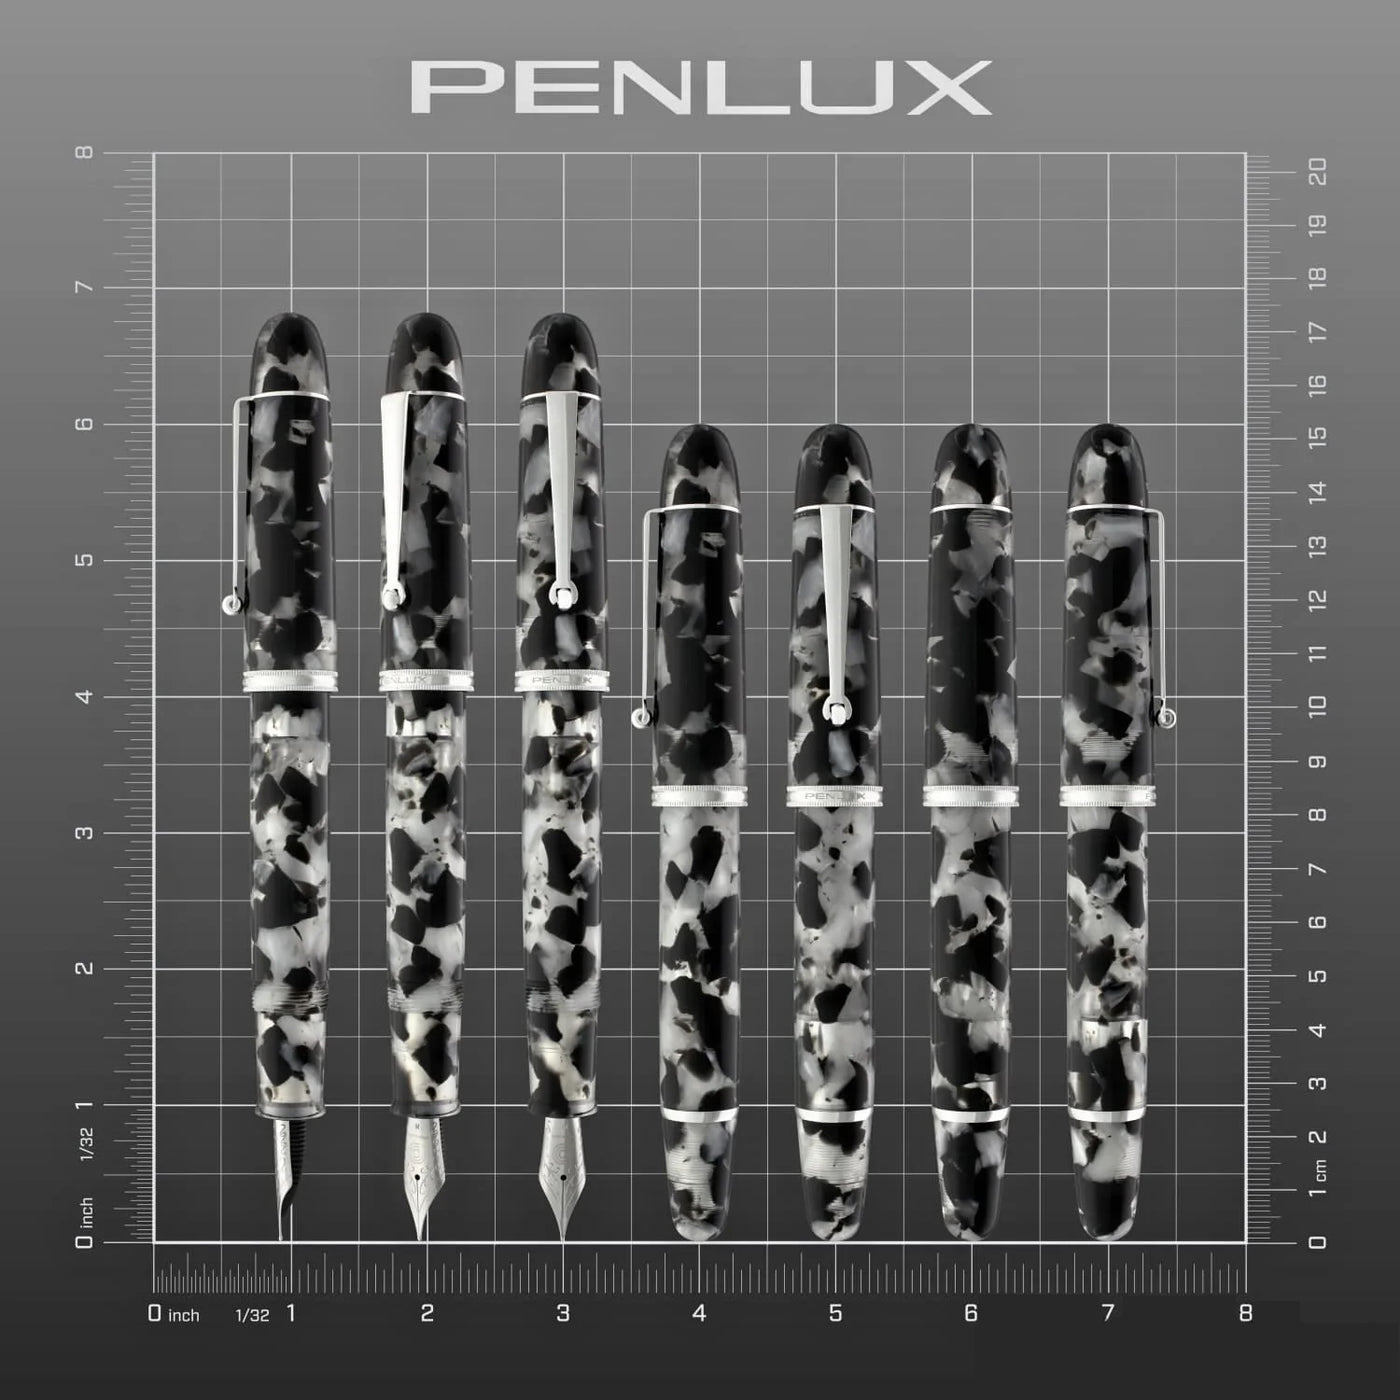 Penlux Koi Fountain Ink Pen | Koi (Black & White) Body | Piston Filling | Oversize Pen With No. 6 Jowo Nibs